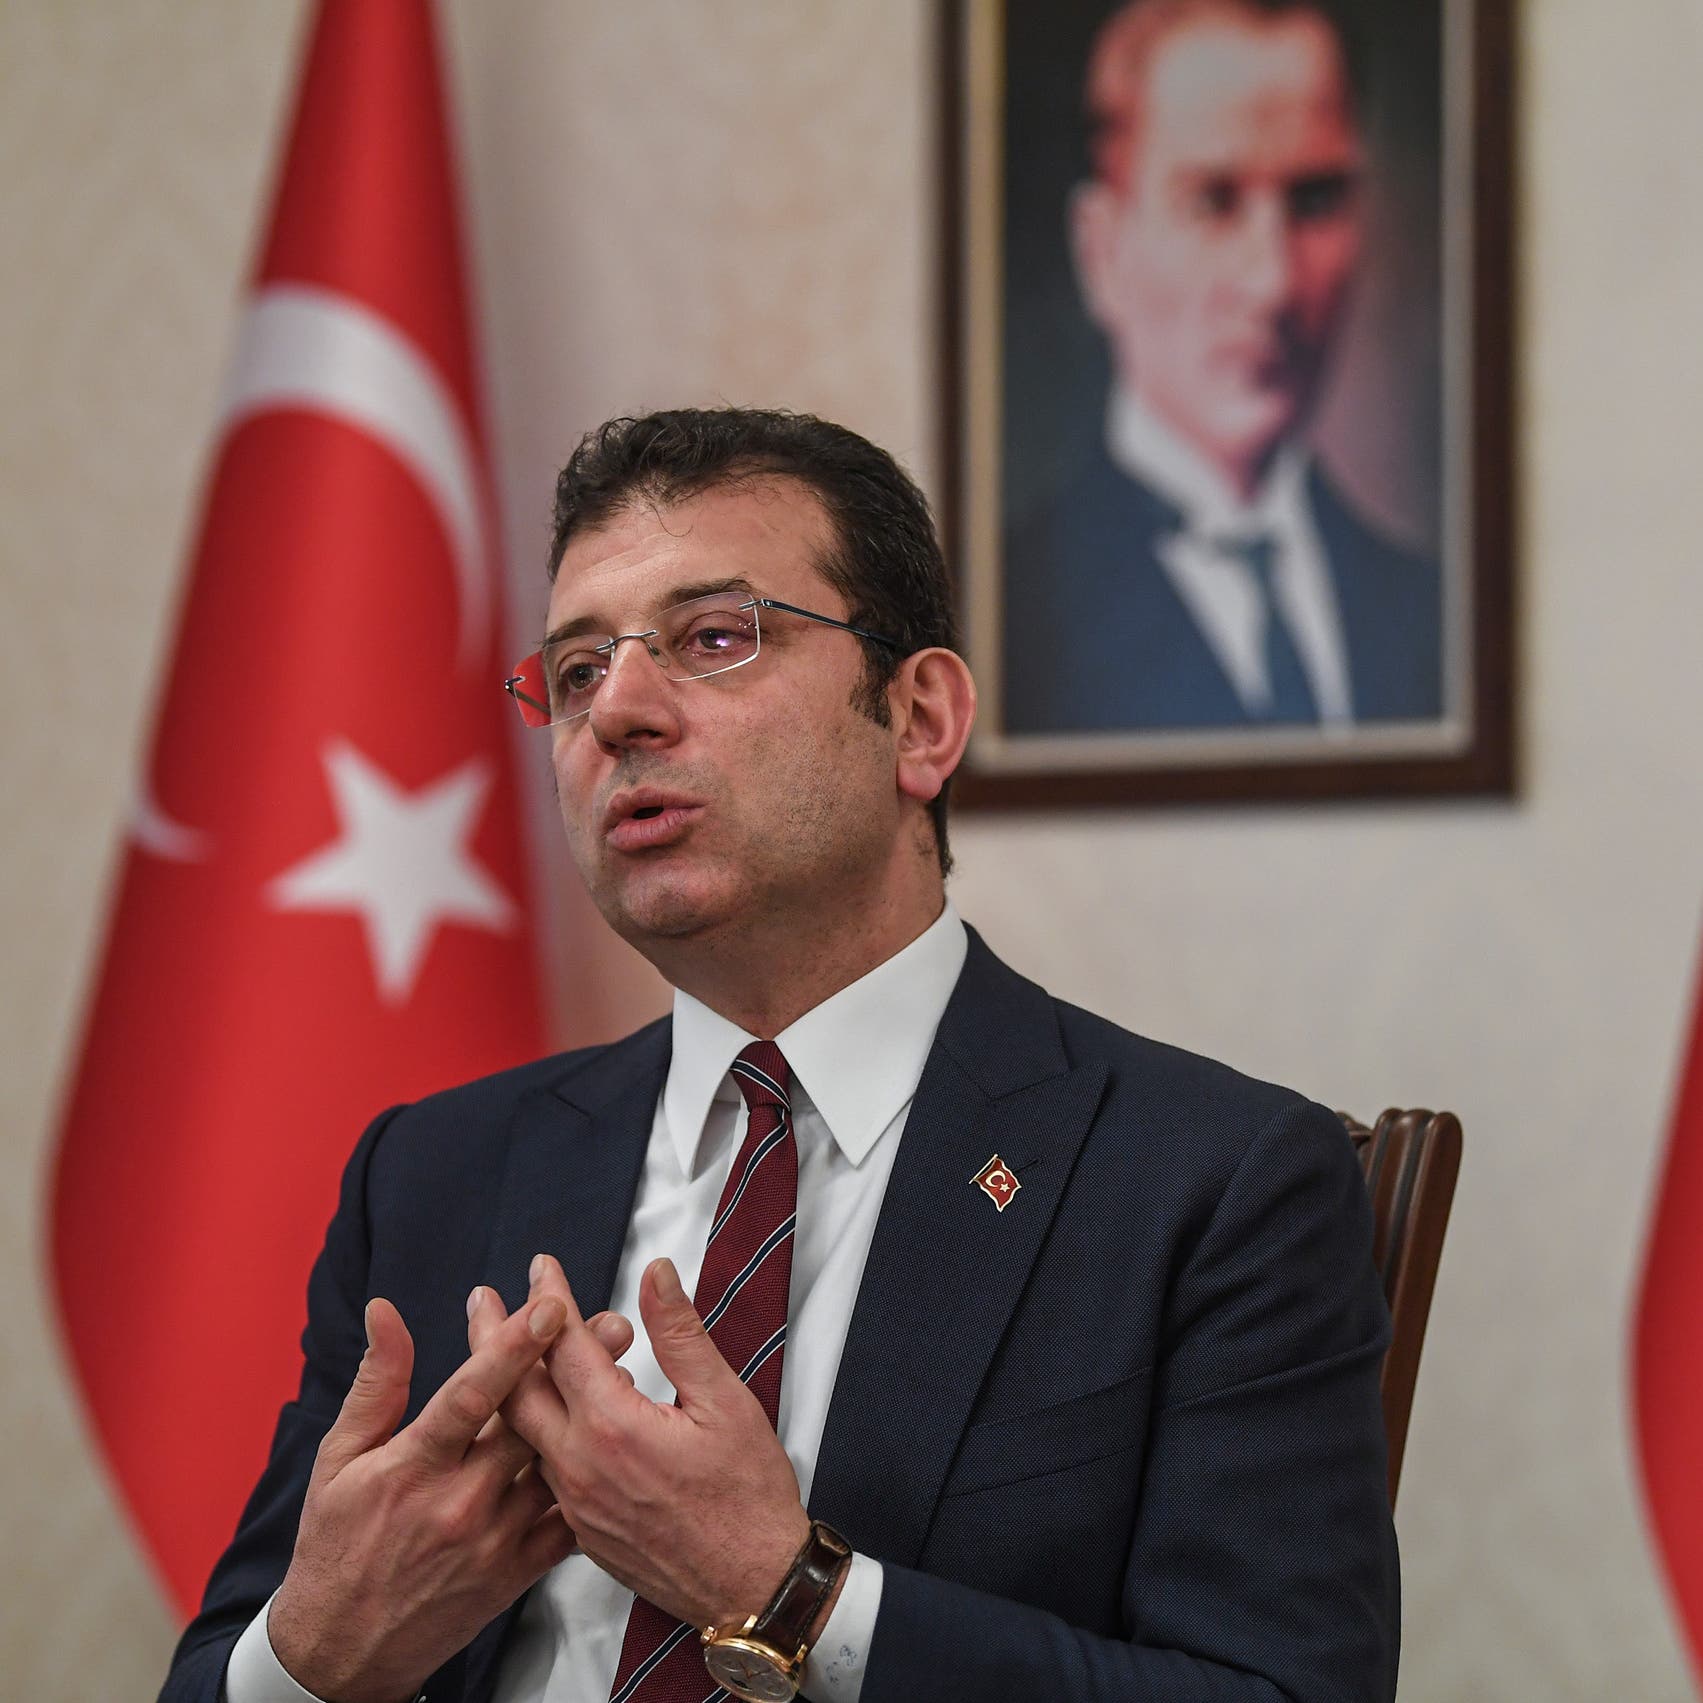 محكمة تركية تقضي بسجن رئيس بلدية اسطنبول.. لوصفه مسؤولين بـ"الأغبياء"